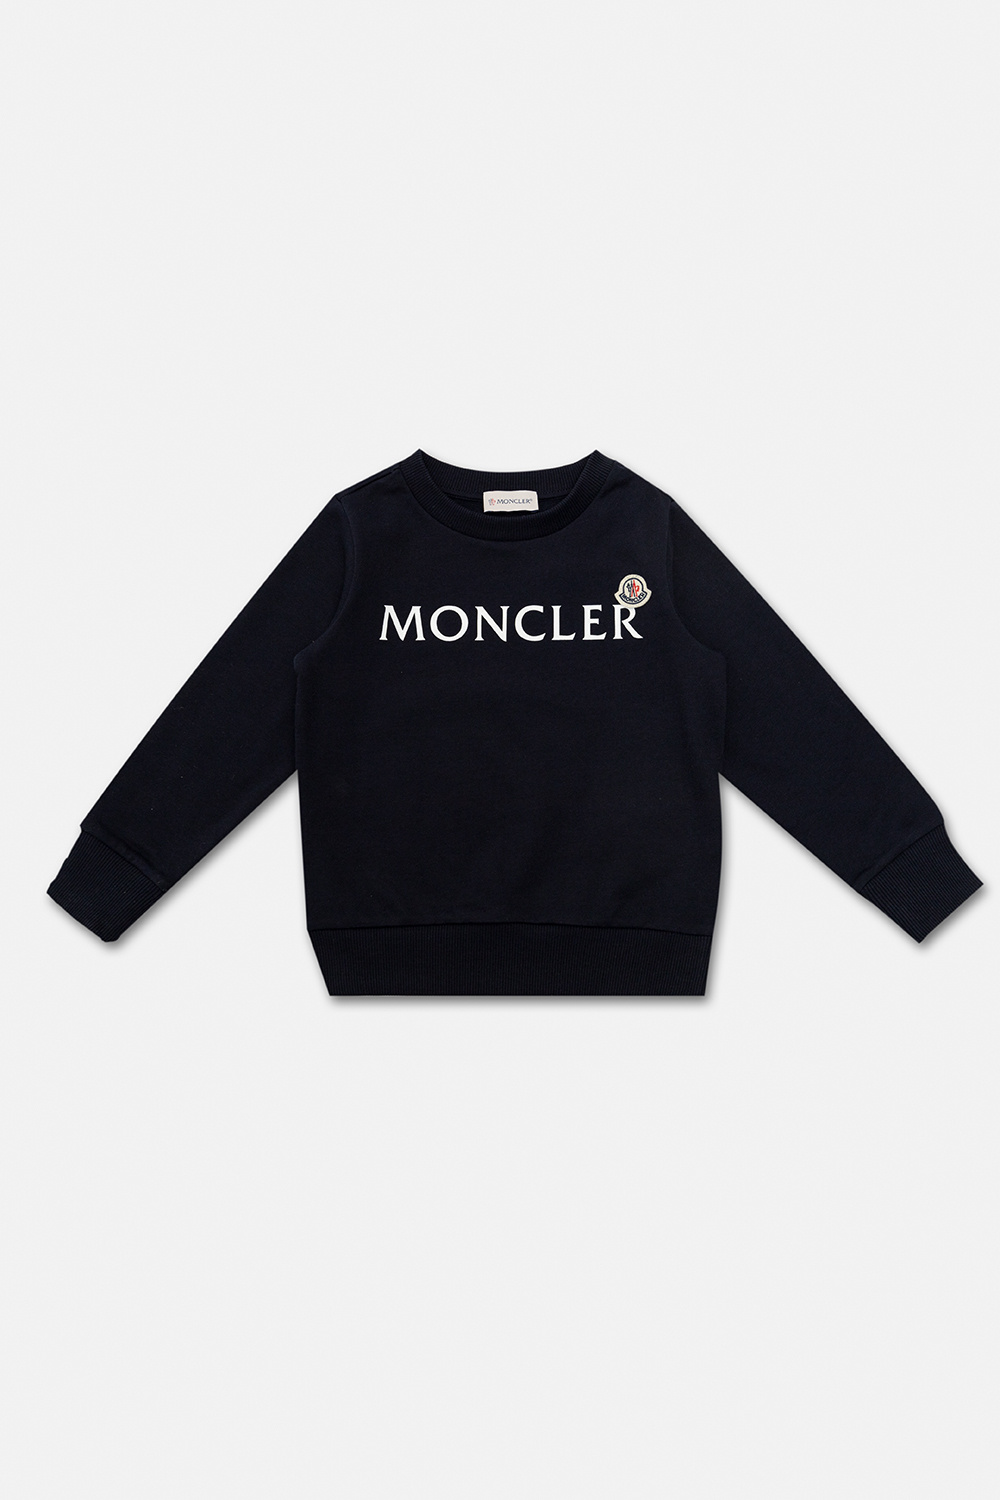 MONCLER, Logo Patch Sweatshirt, Women